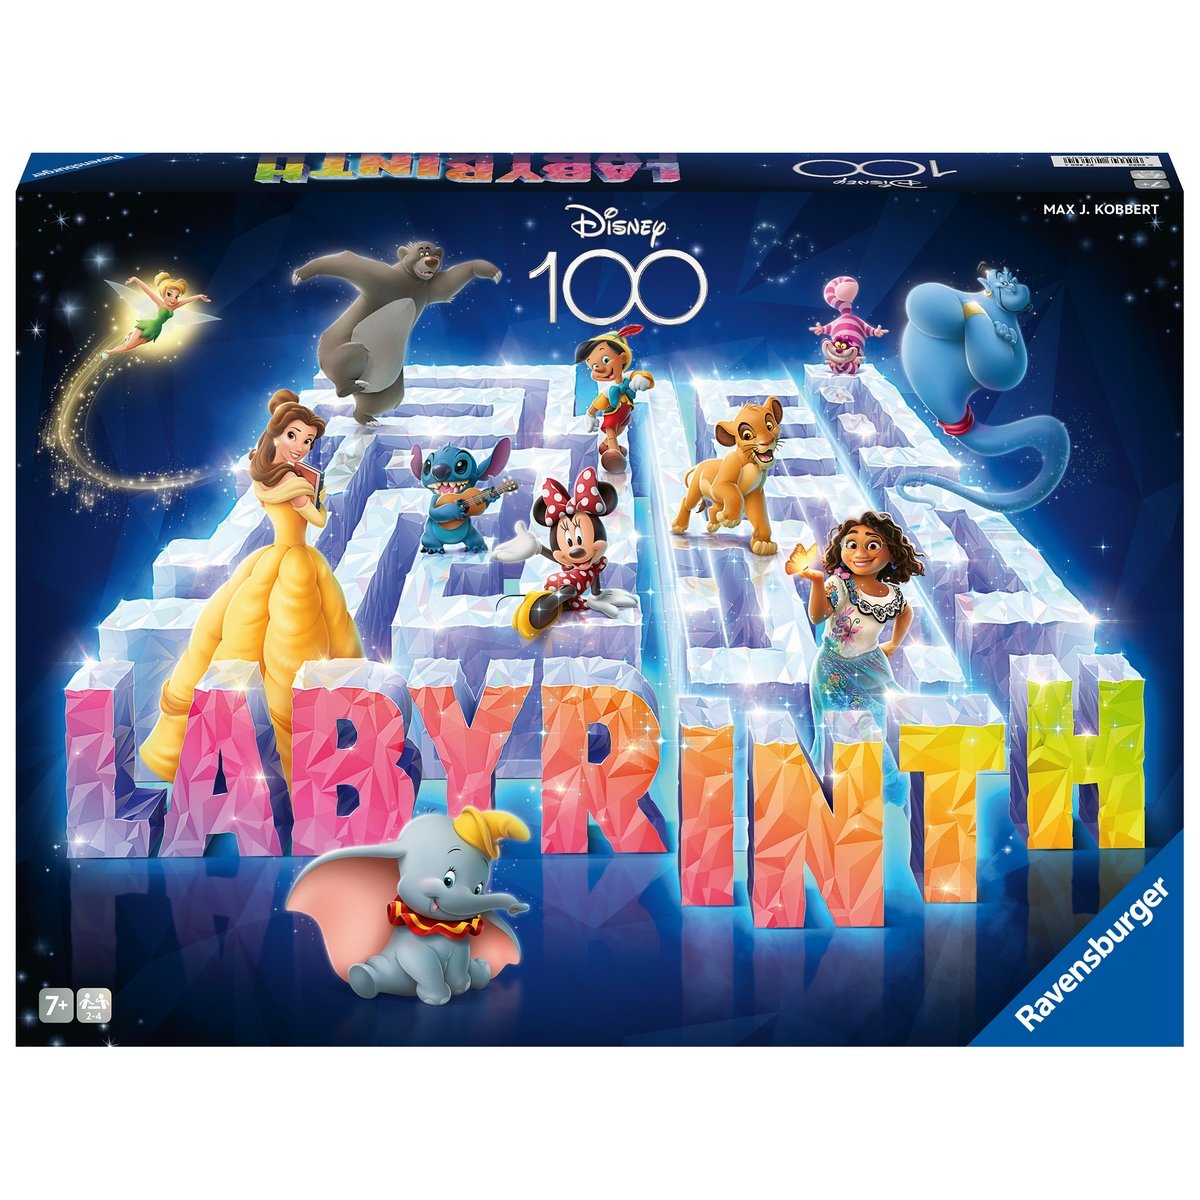 Labyrinthe Disney 100 ans - La Grande Récré